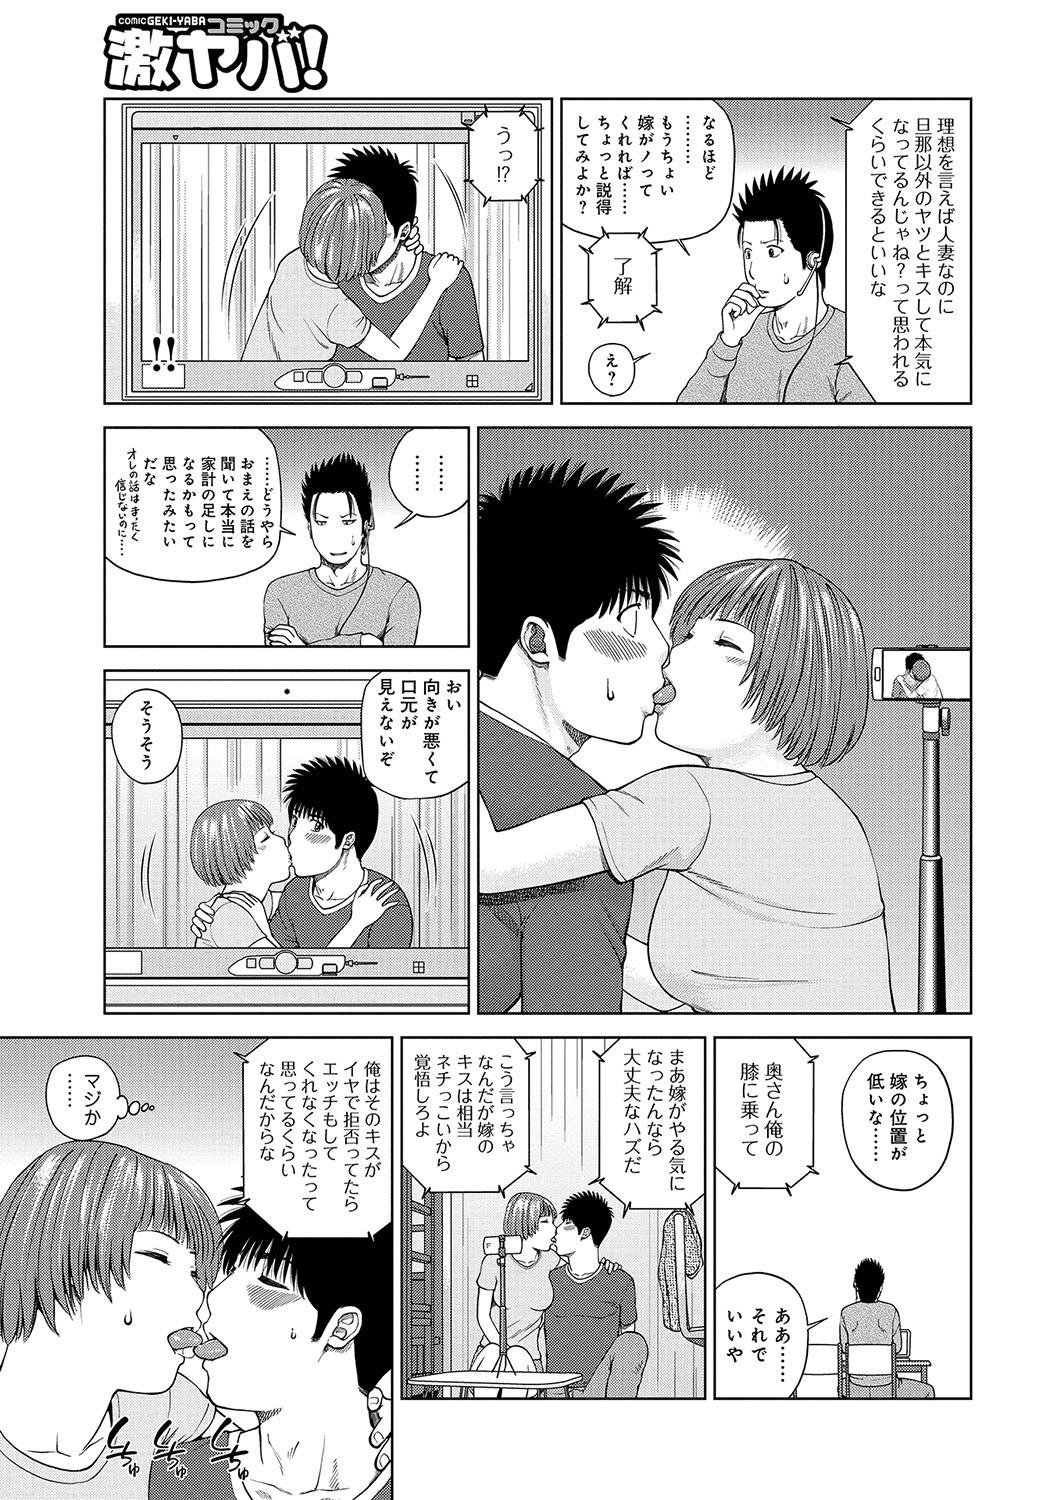 4some WEB Ban COMIC Gekiyaba! Vol. 96 Argenta - Page 6